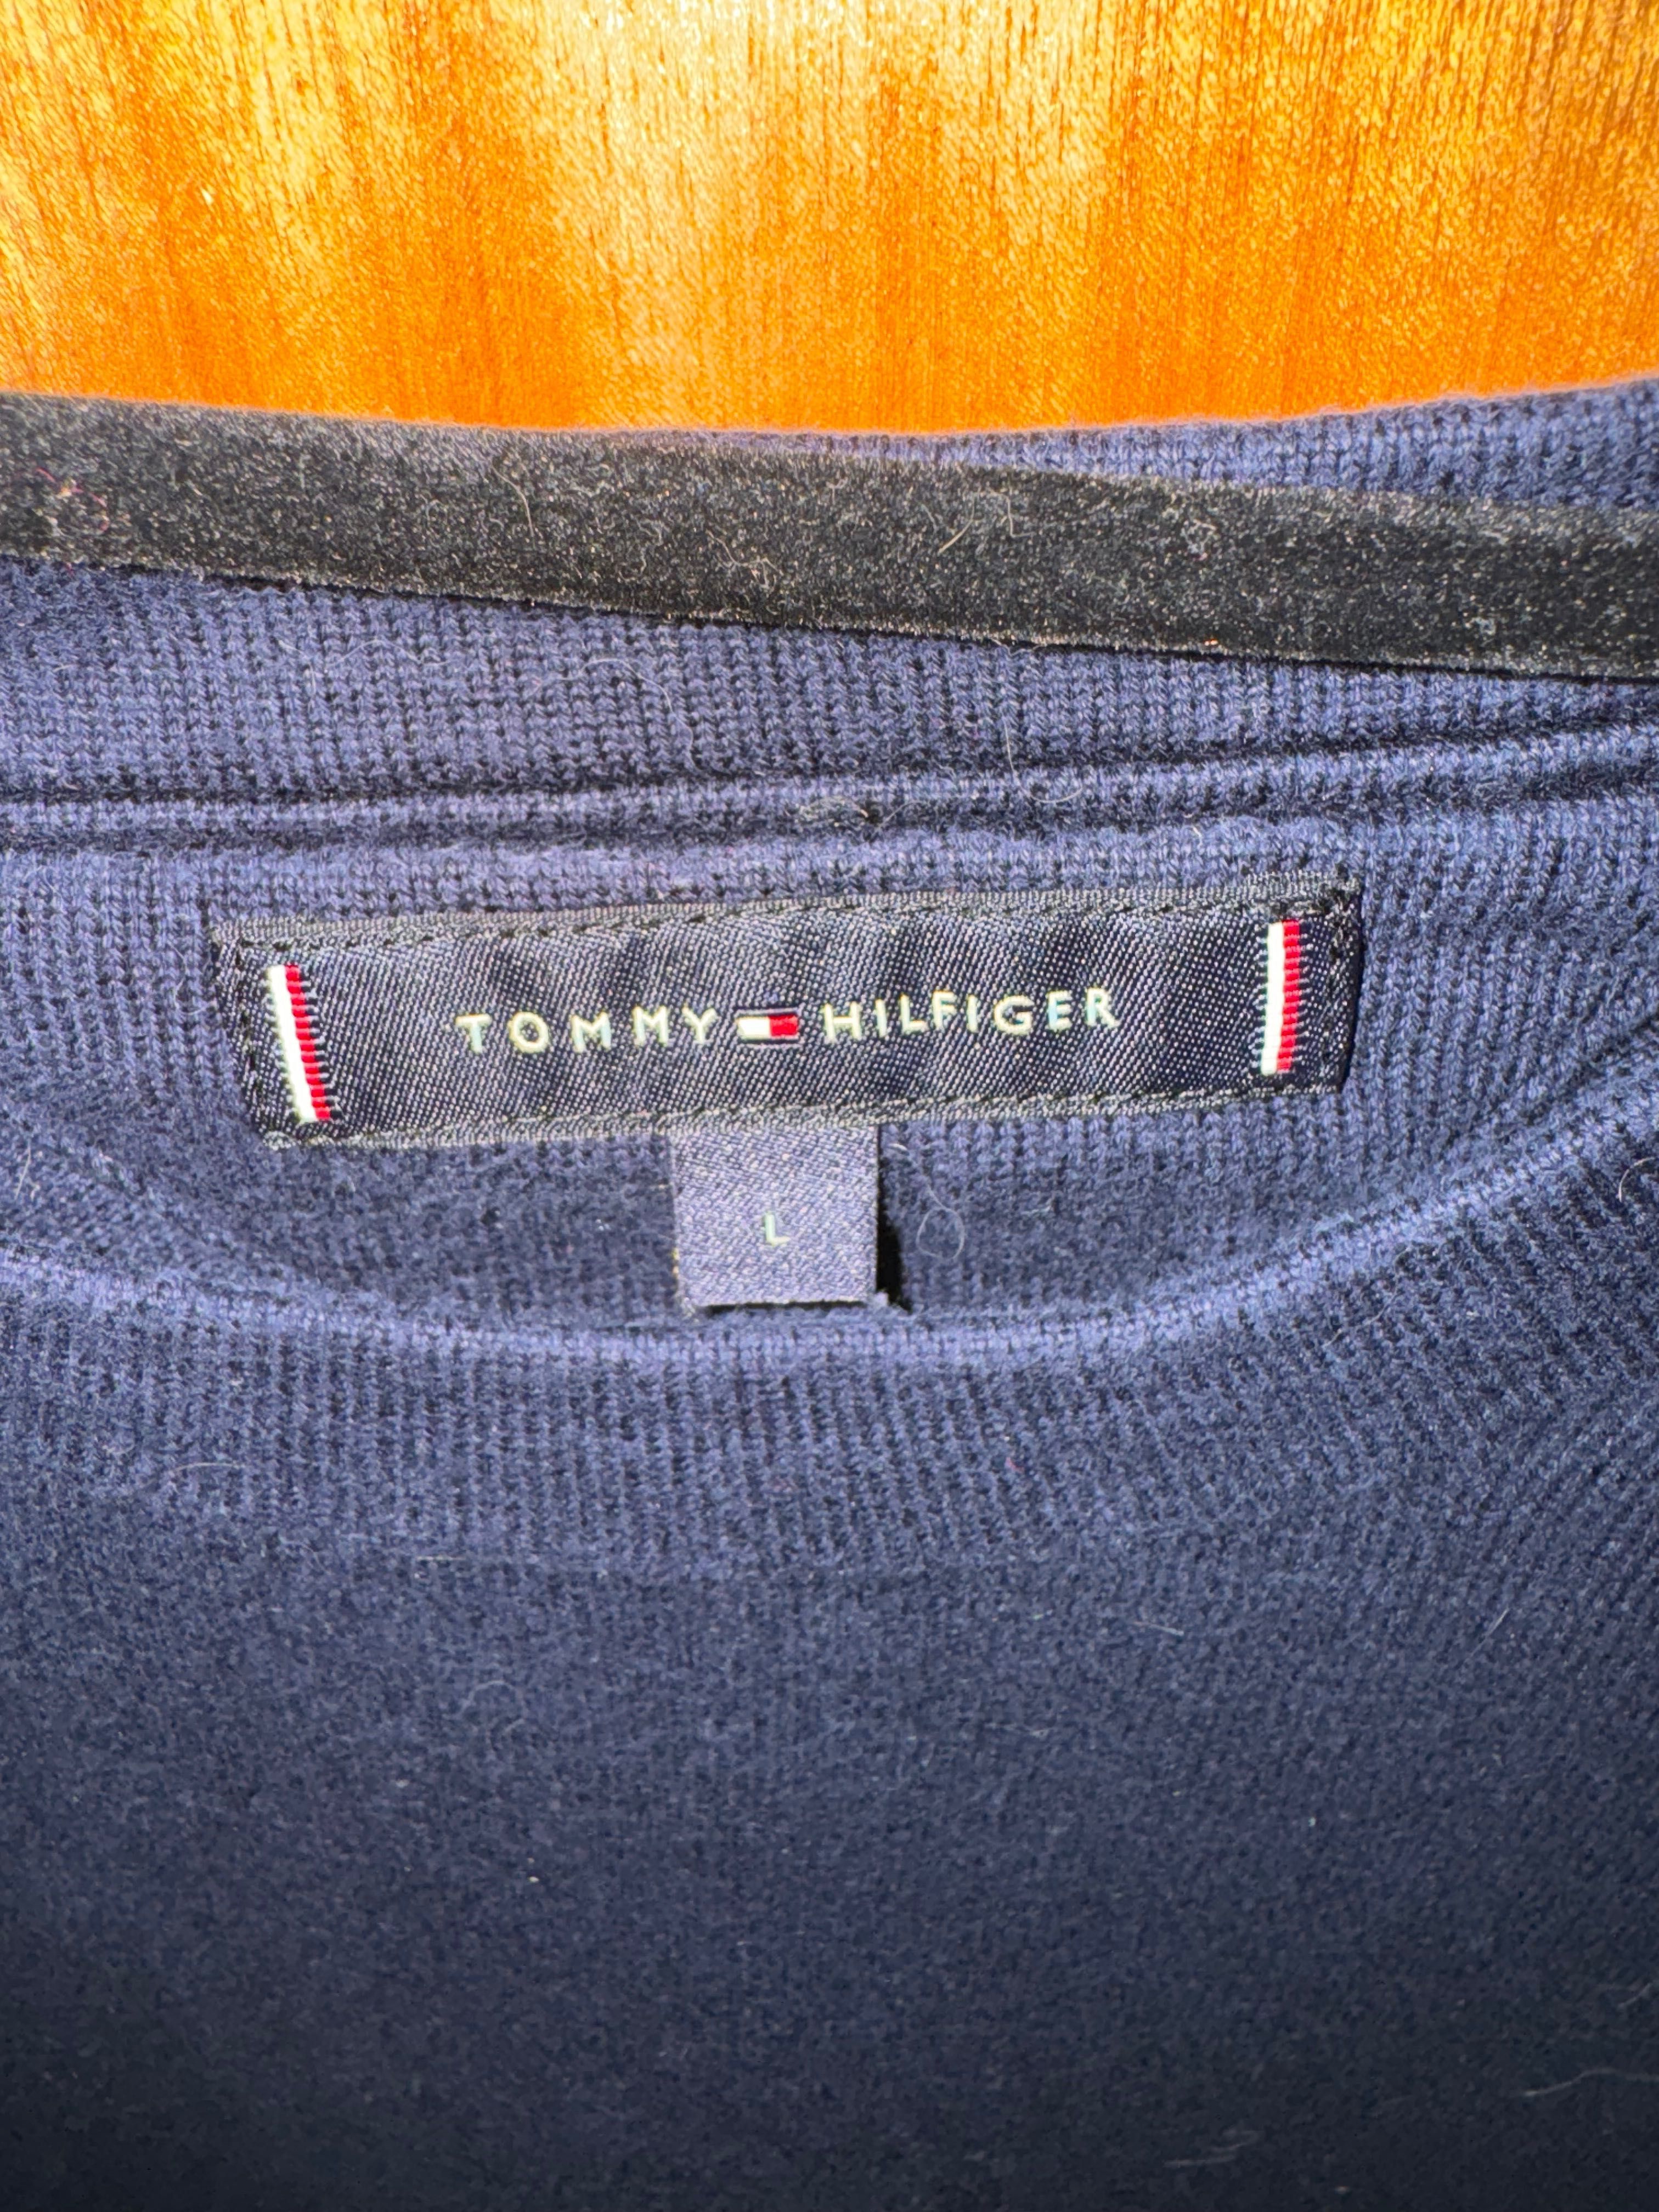 Pullover Tommy Hilfiger Azul Navy (L)